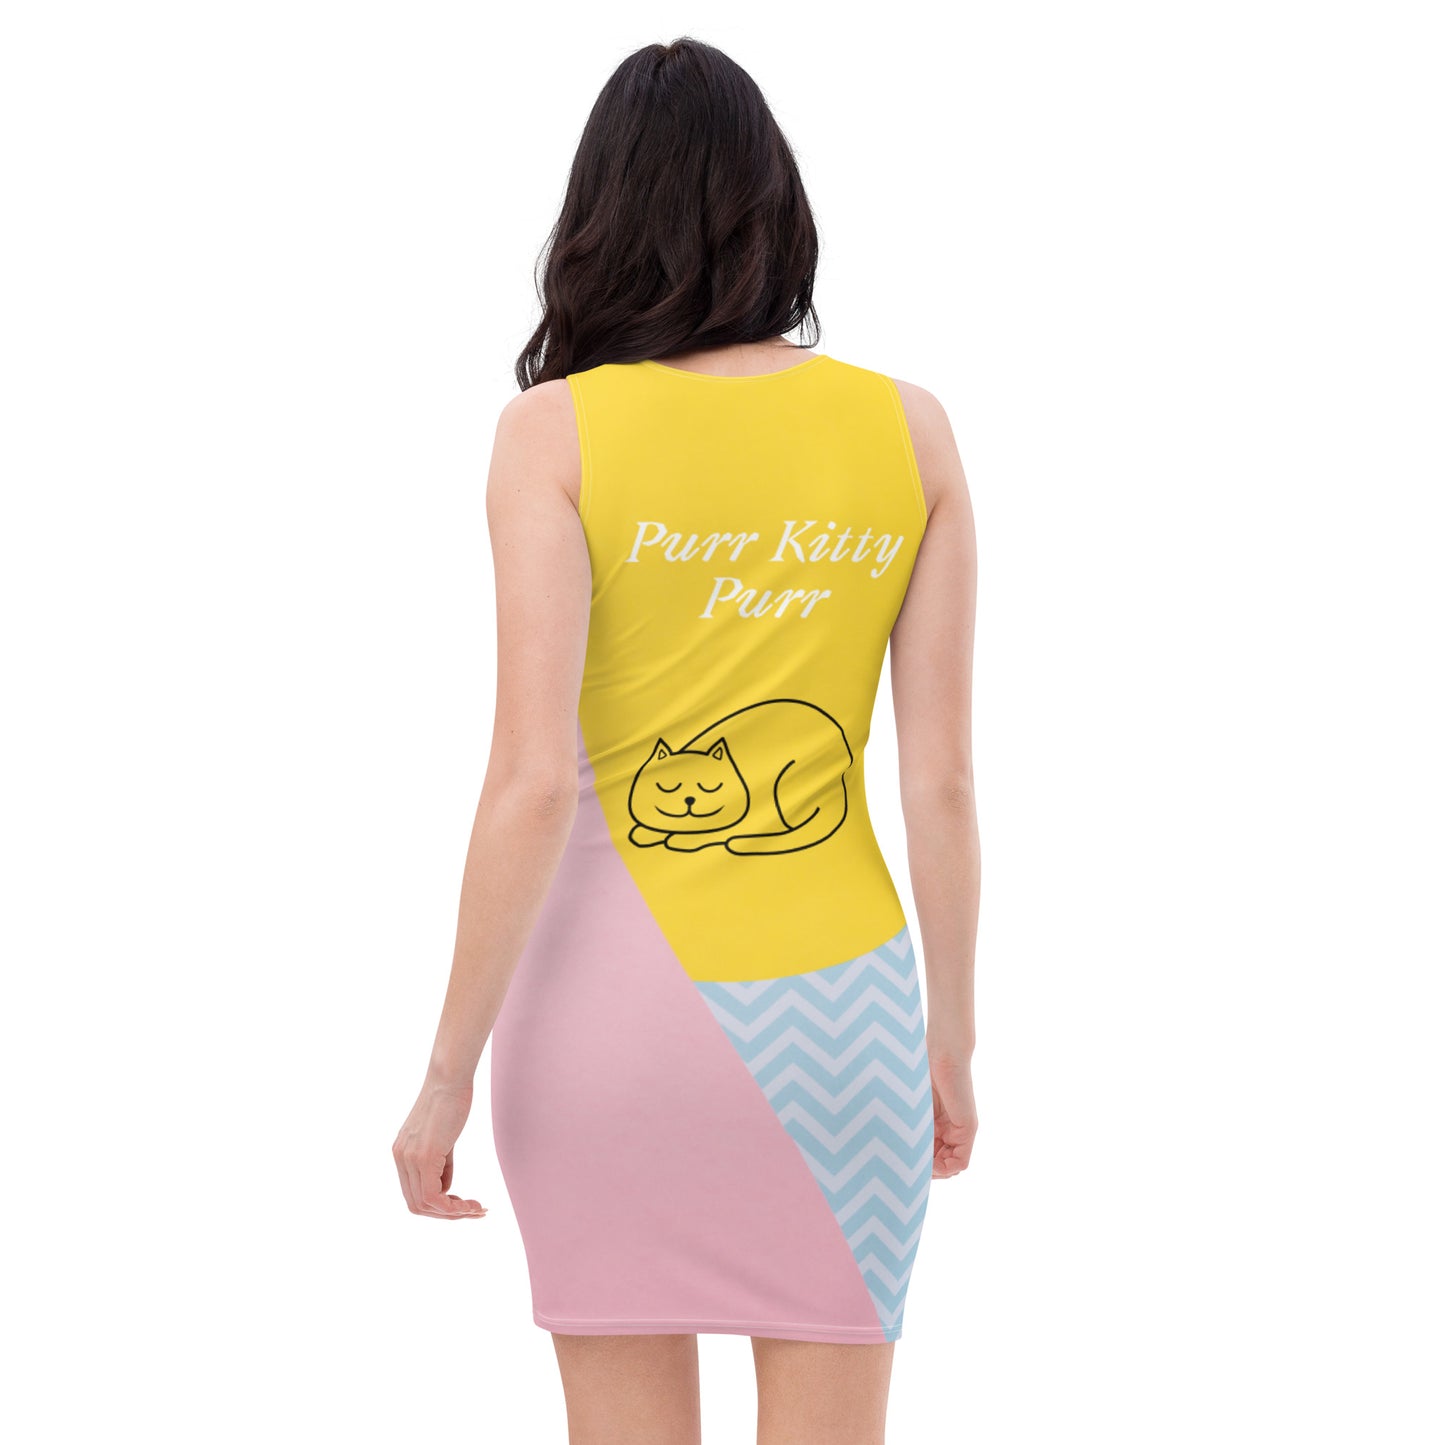 Purr Kitty Purr Dress-Version 2